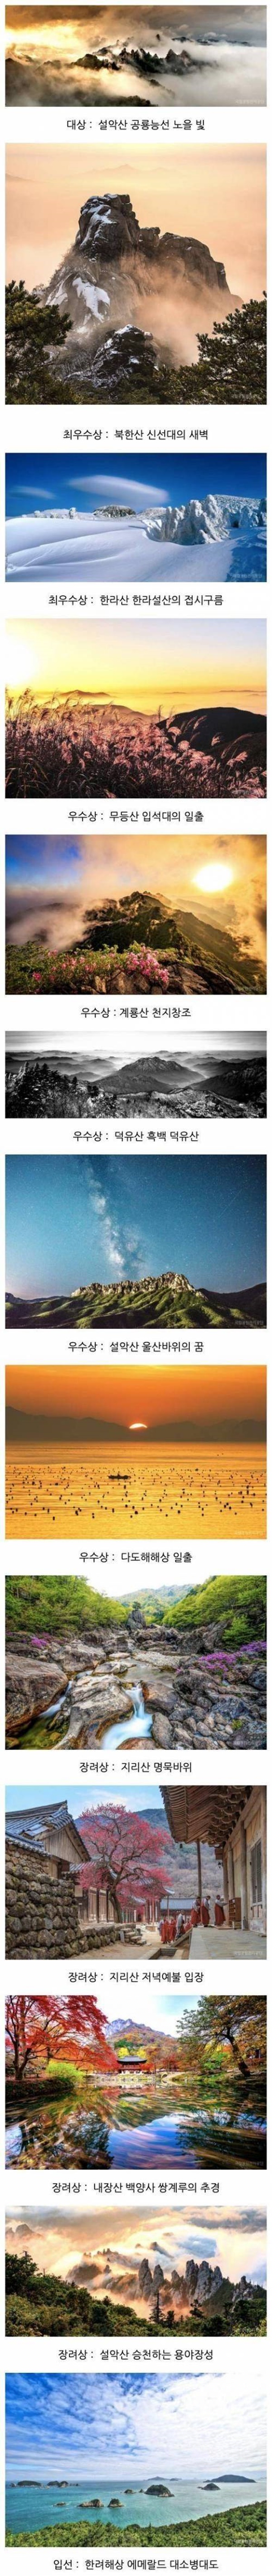 한국의 국립공원 사진전 수상작